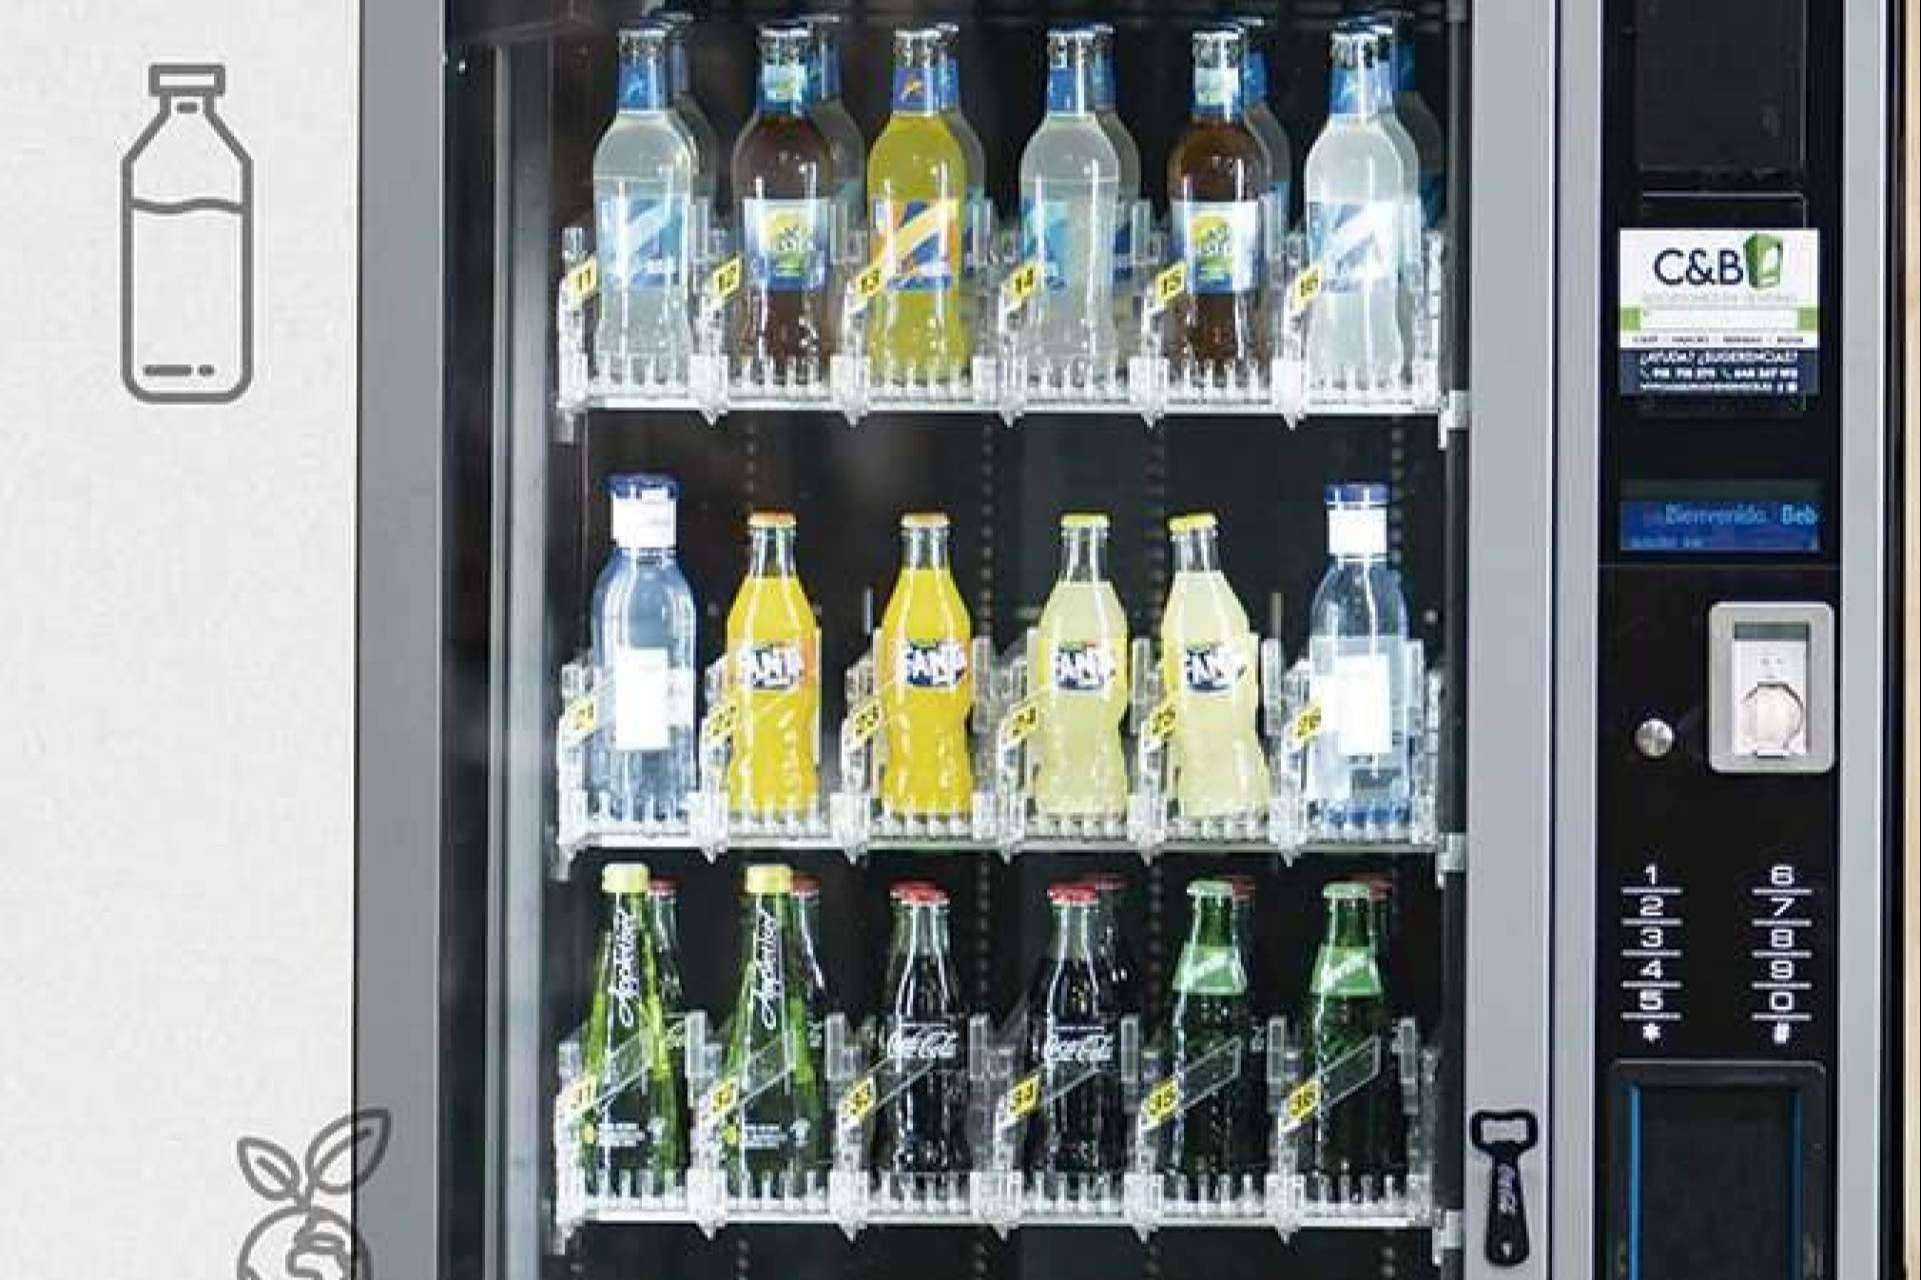  C&B Señor conjuga sostenibilidad e innovación en su servicio de máquinas expendedoras de comida 